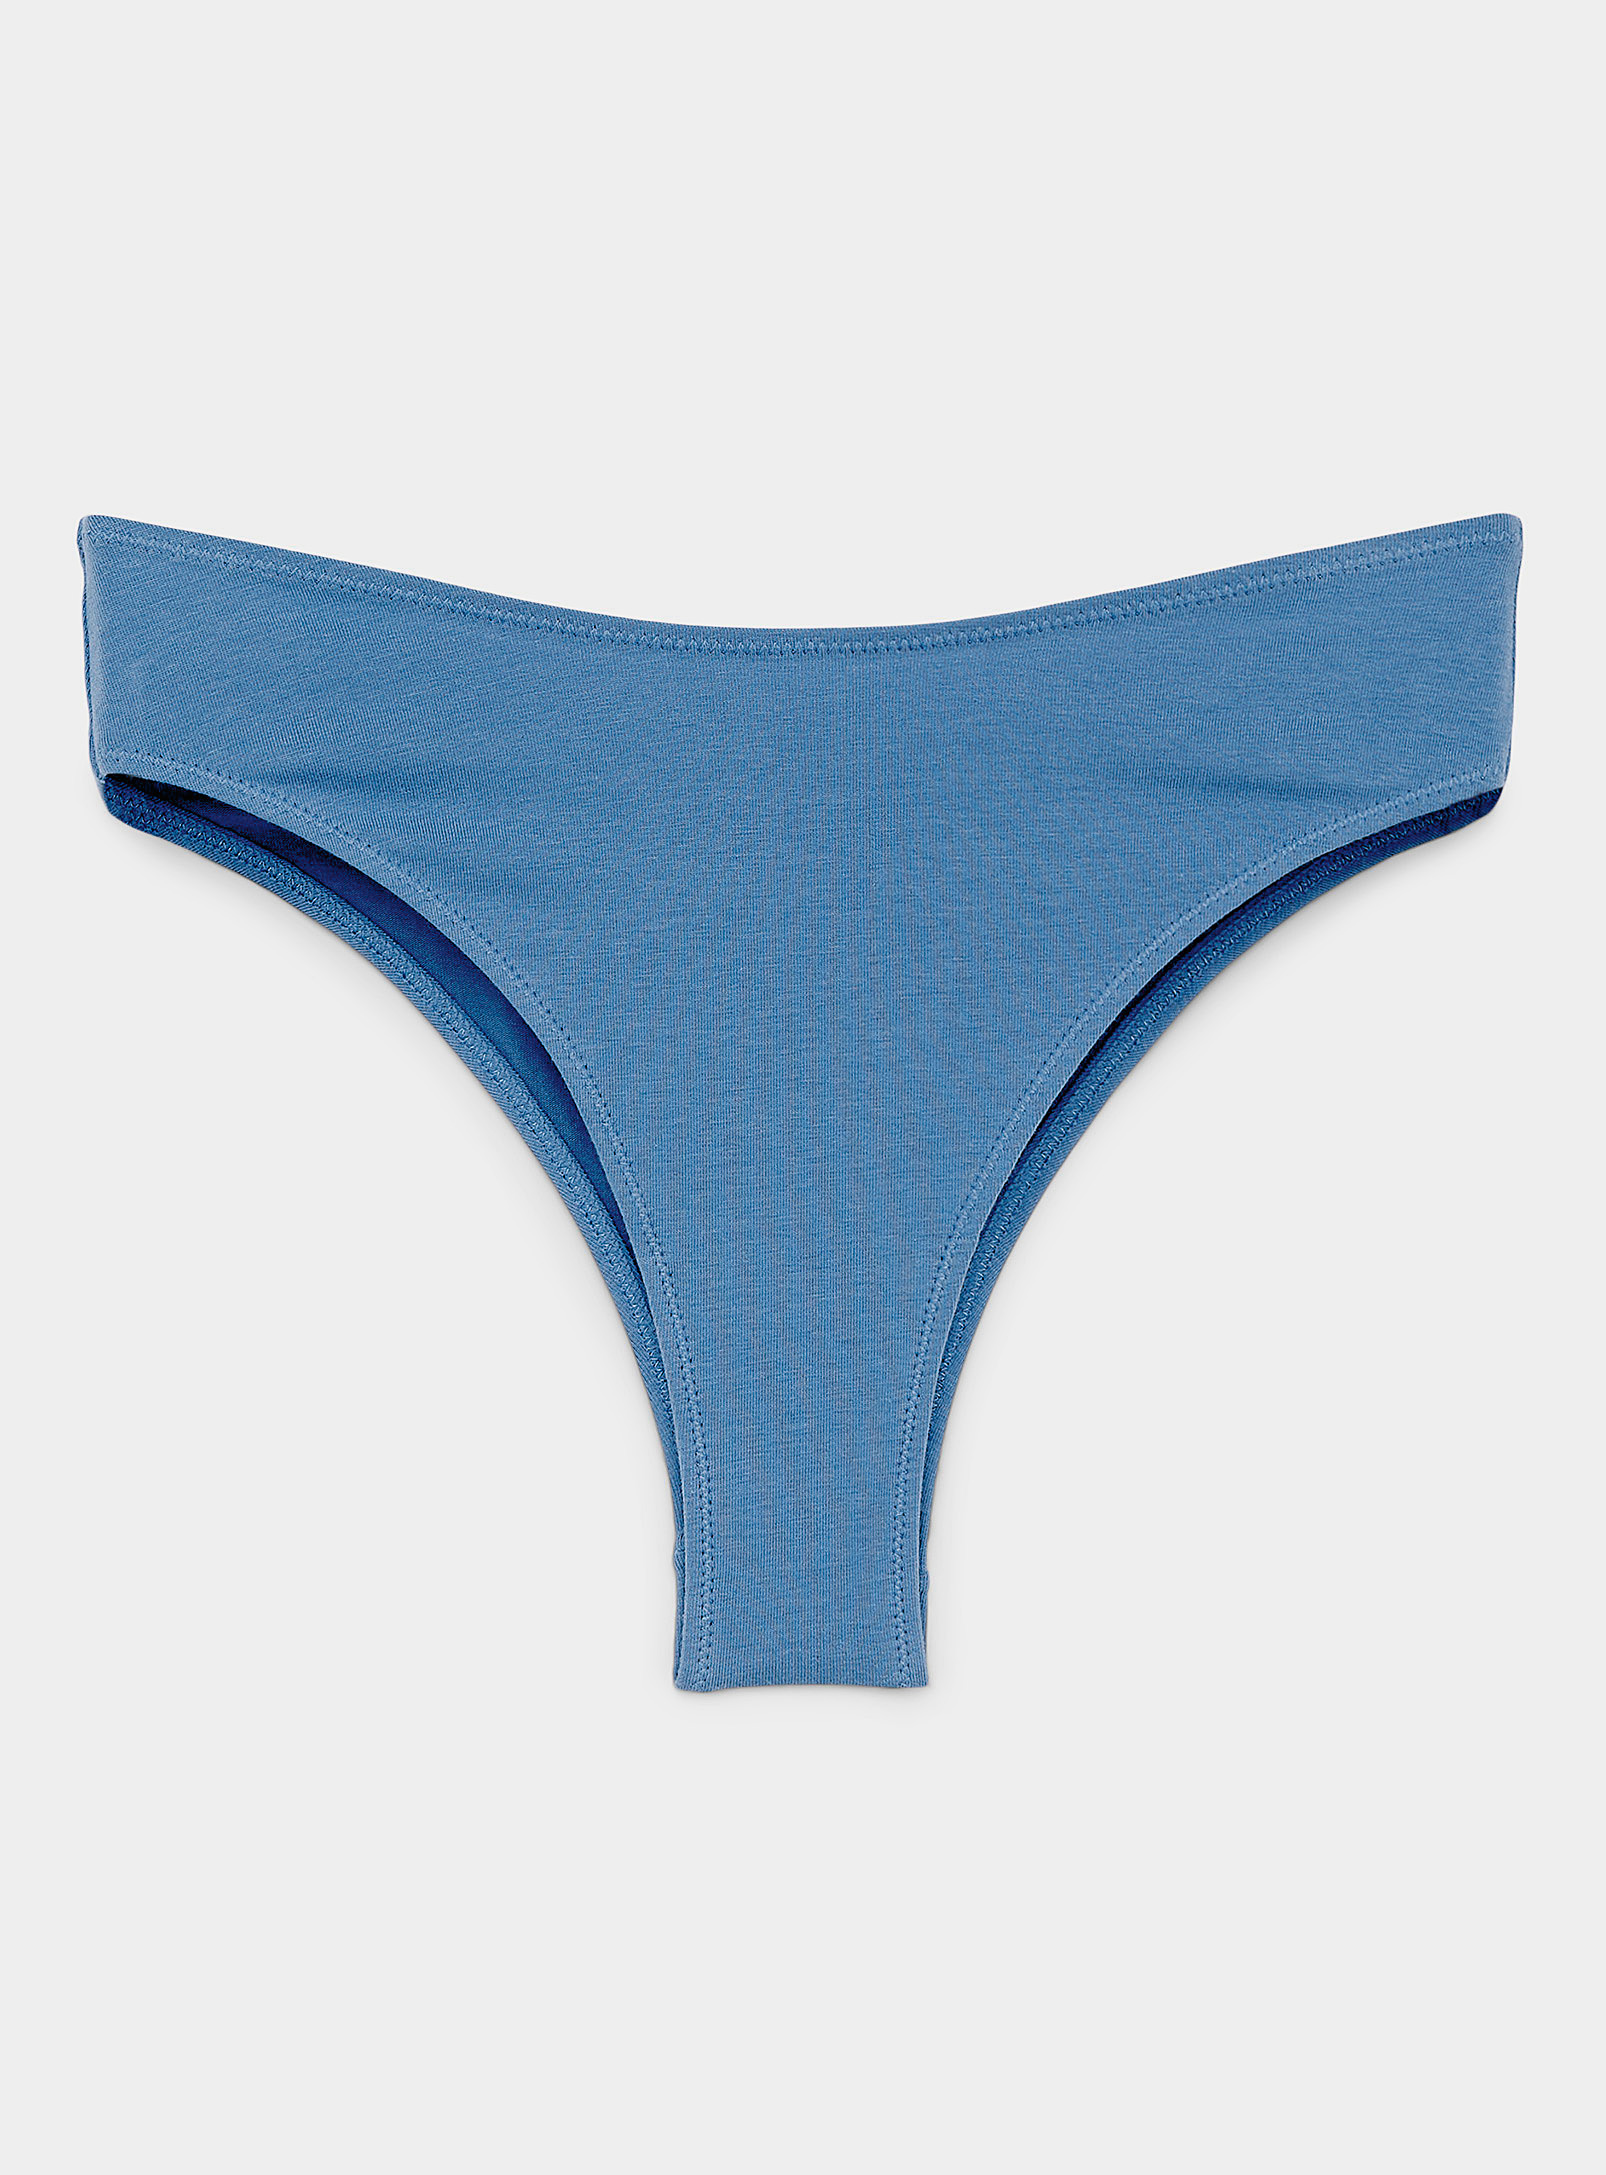 Miiyu High-cut Organic Cotton Brazilian Panty In Blue